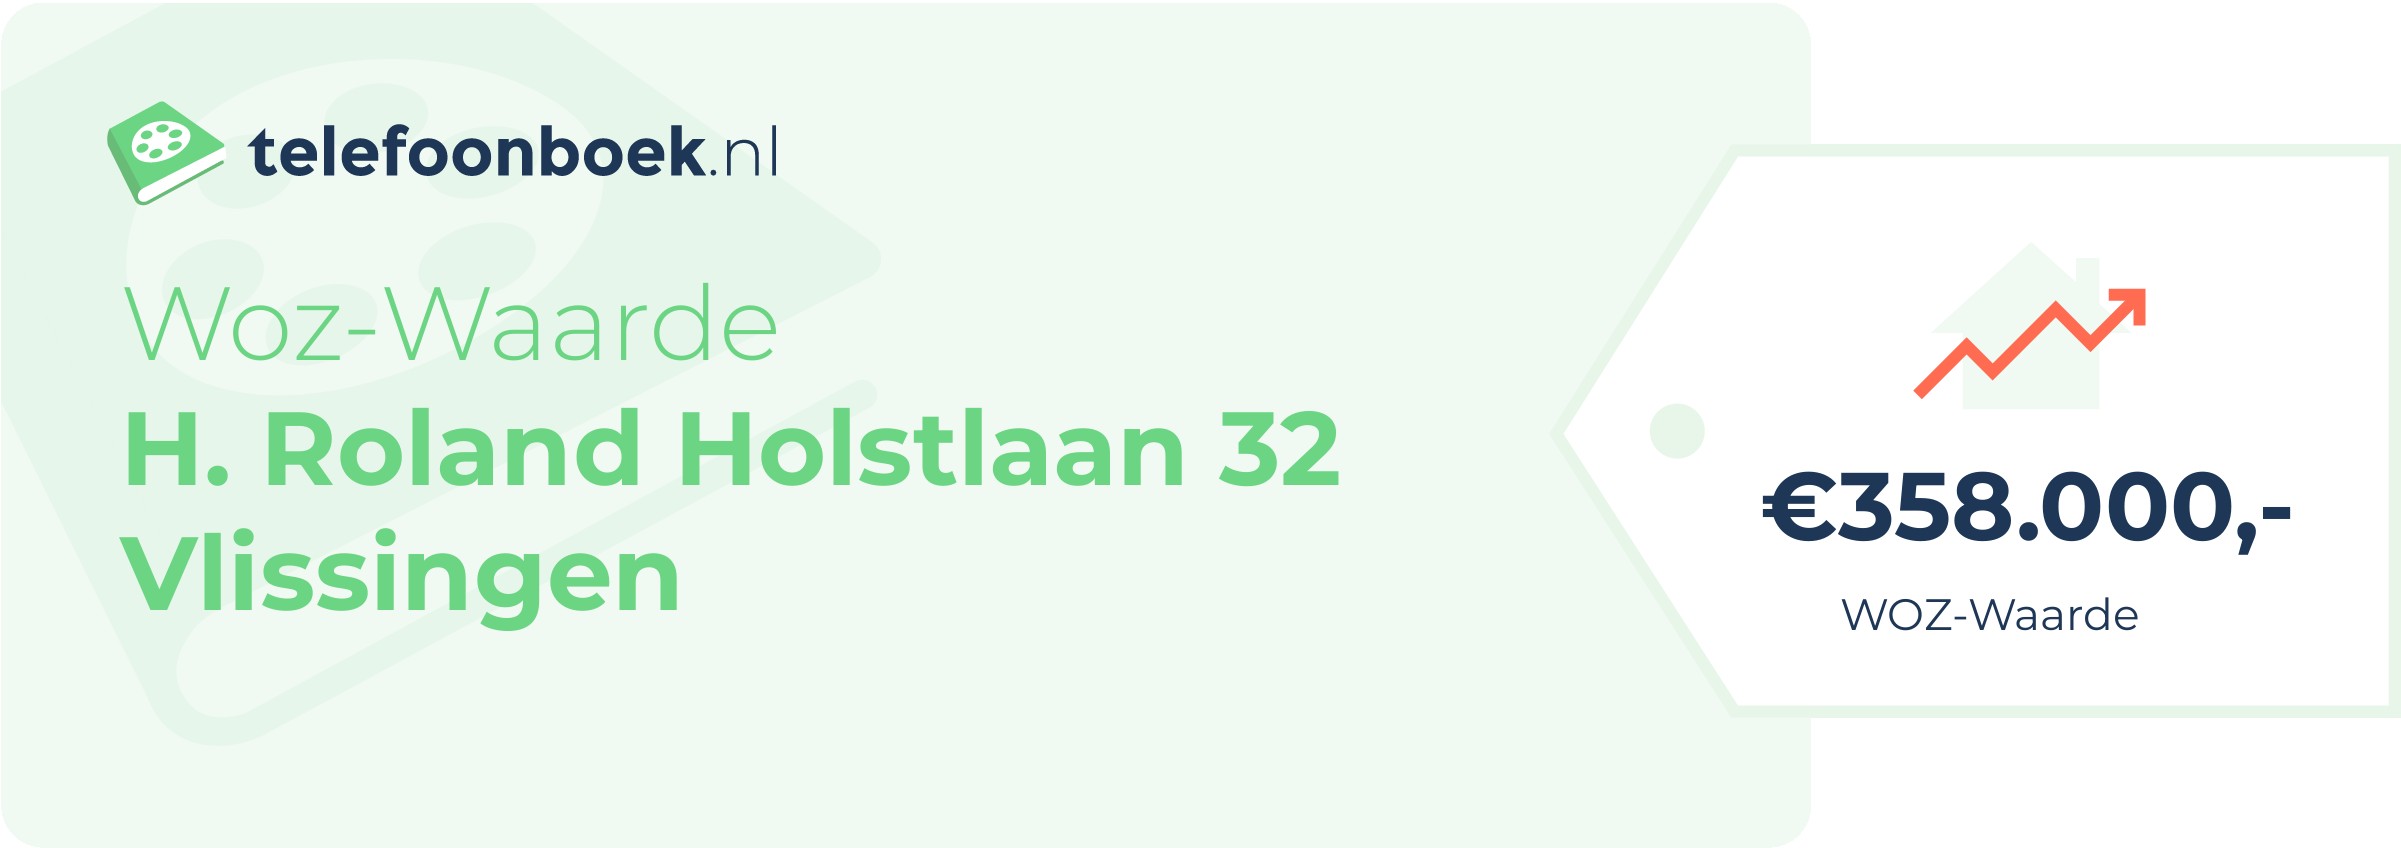 WOZ-waarde H. Roland Holstlaan 32 Vlissingen